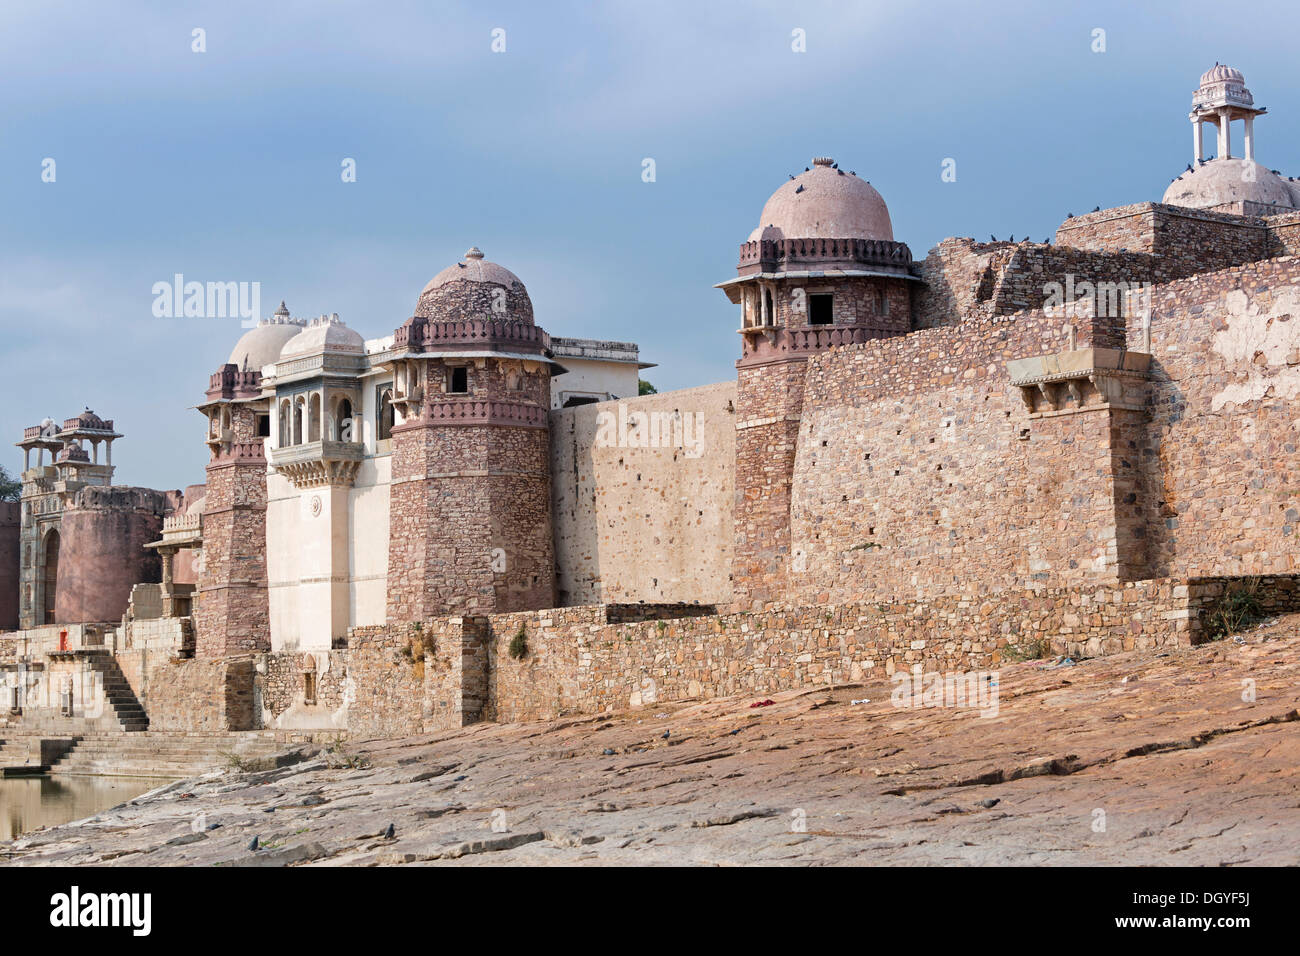 Ratan Singh Palace, Chittorgarh, Rajasthan, India Stock Photo